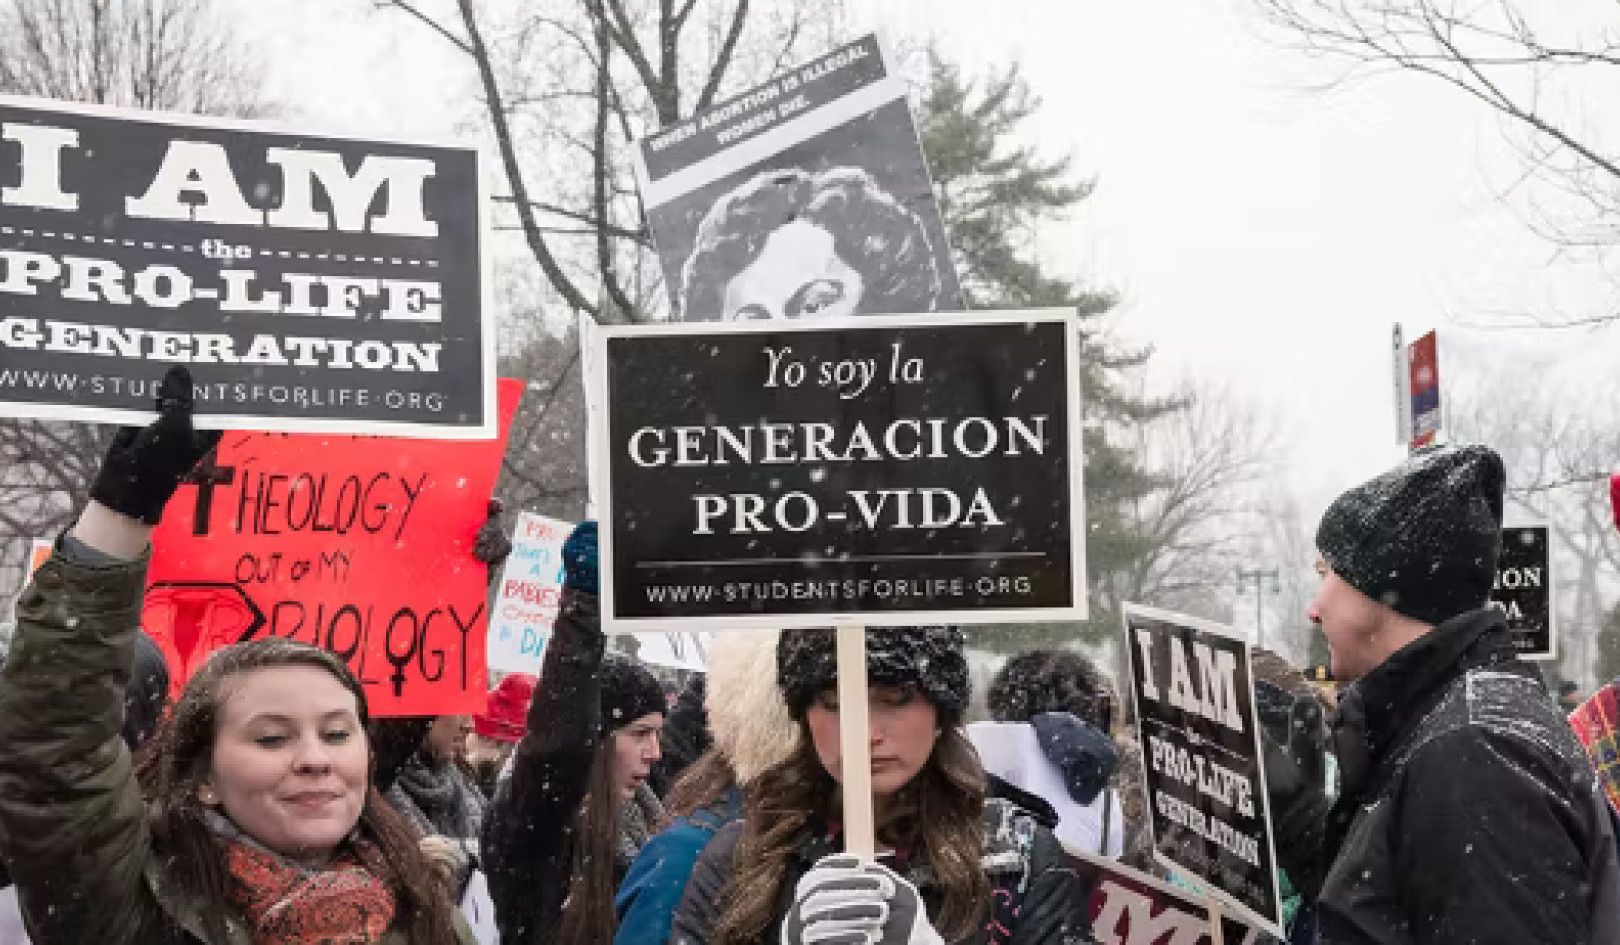 Що насправді спонукає до переконань проти абортів?